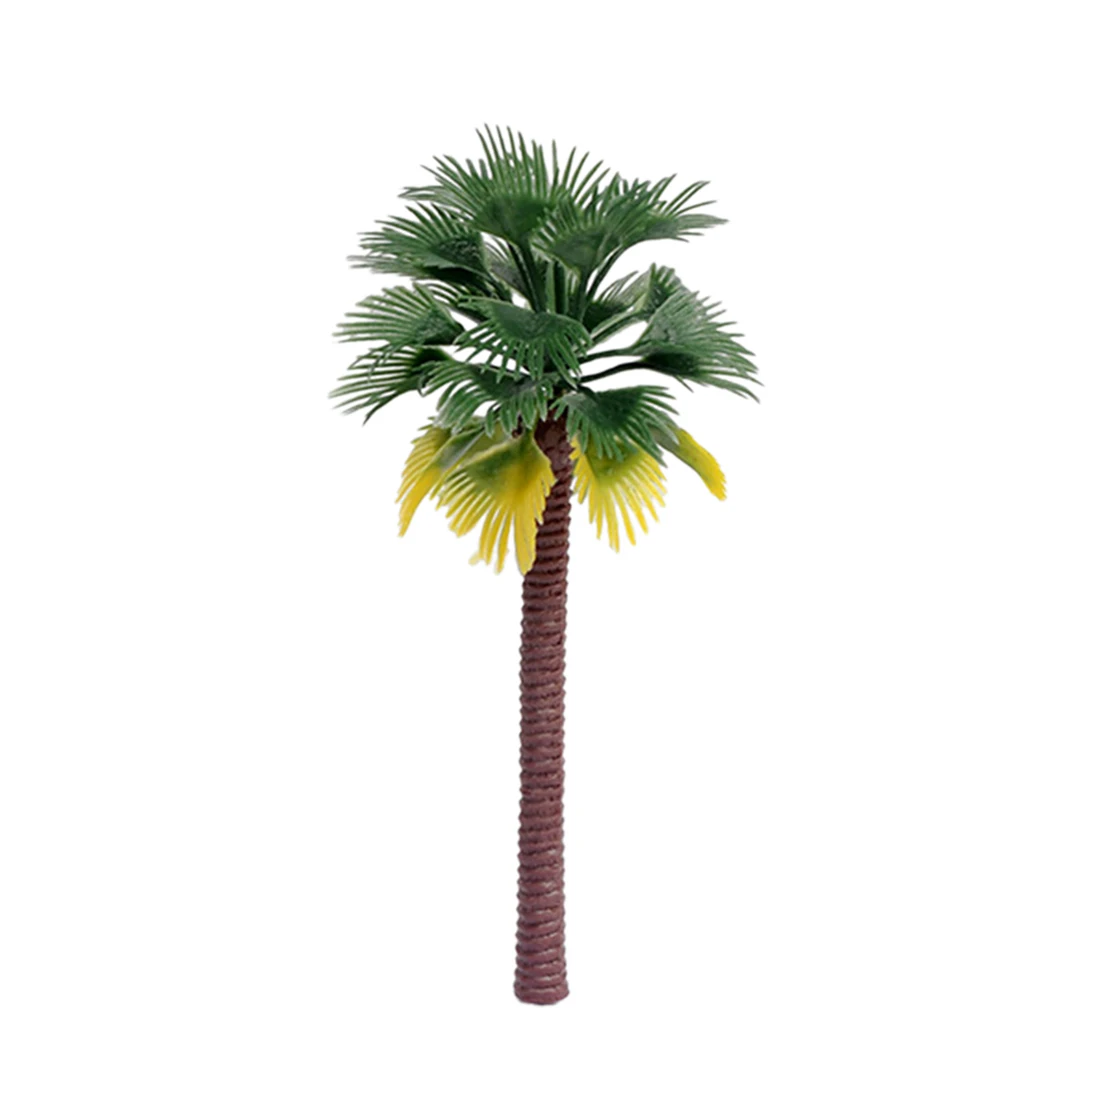 6 шт./лот 12 см пластиковые кокосовые пальмы поезд железнодорожная архитектура диорама Дерево Модель для DIY песок Tanble